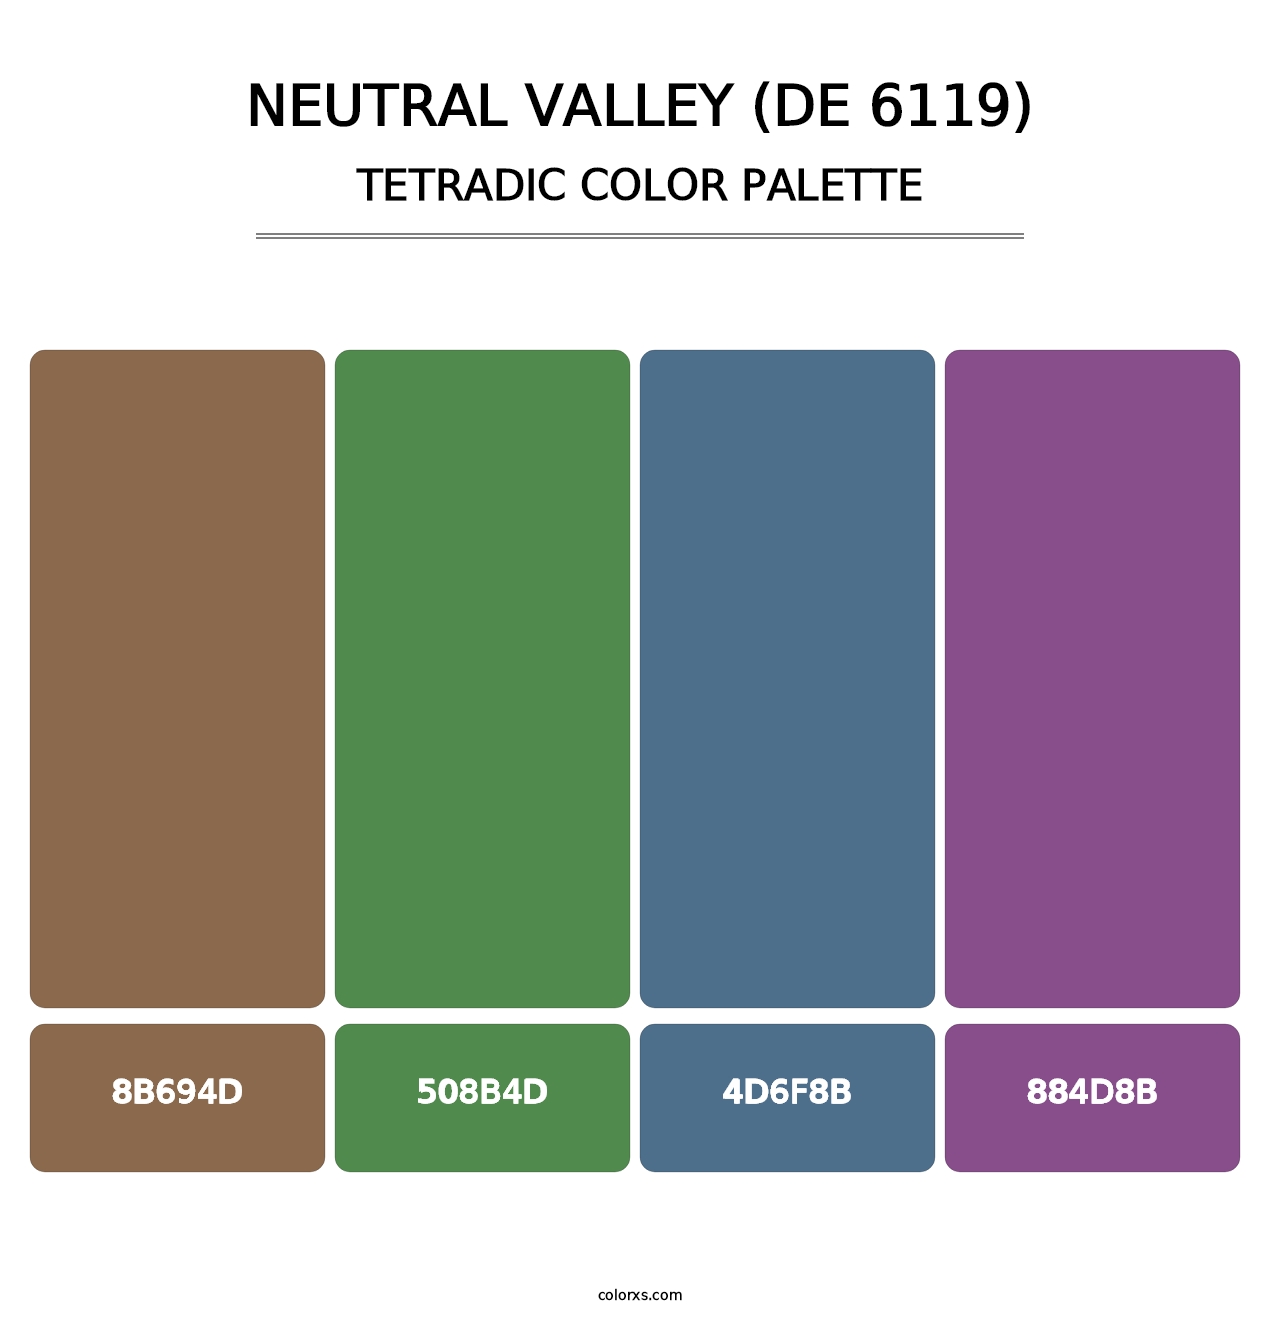 Neutral Valley (DE 6119) - Tetradic Color Palette